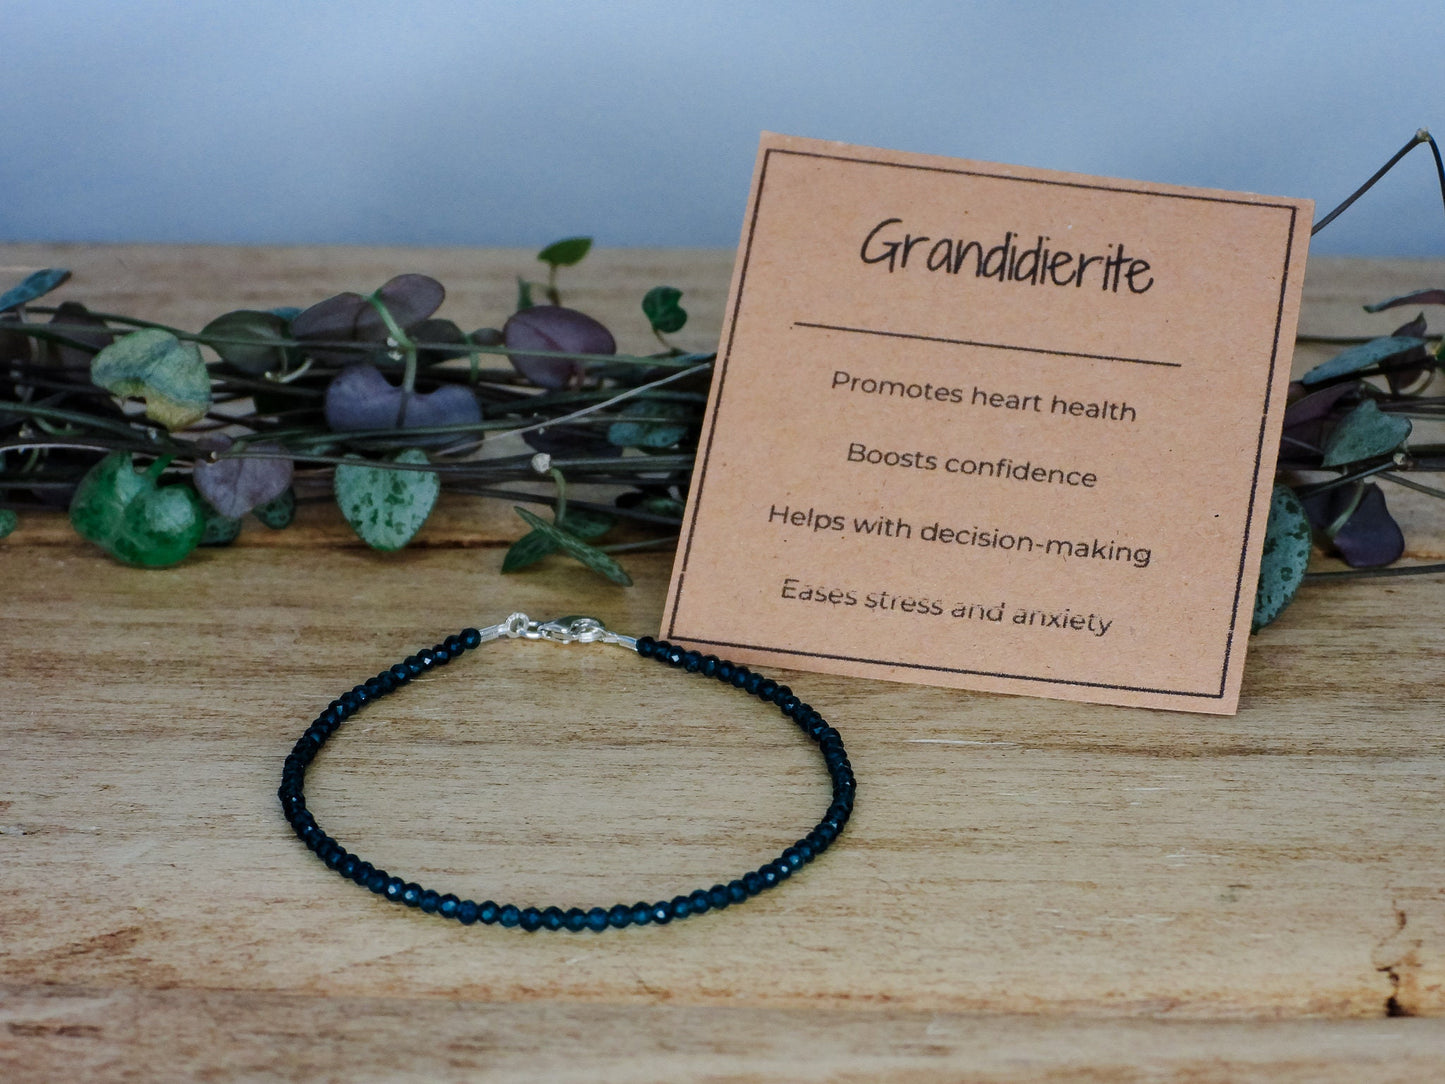 Dainty Teal Grandidierite Gemstone Bracelet